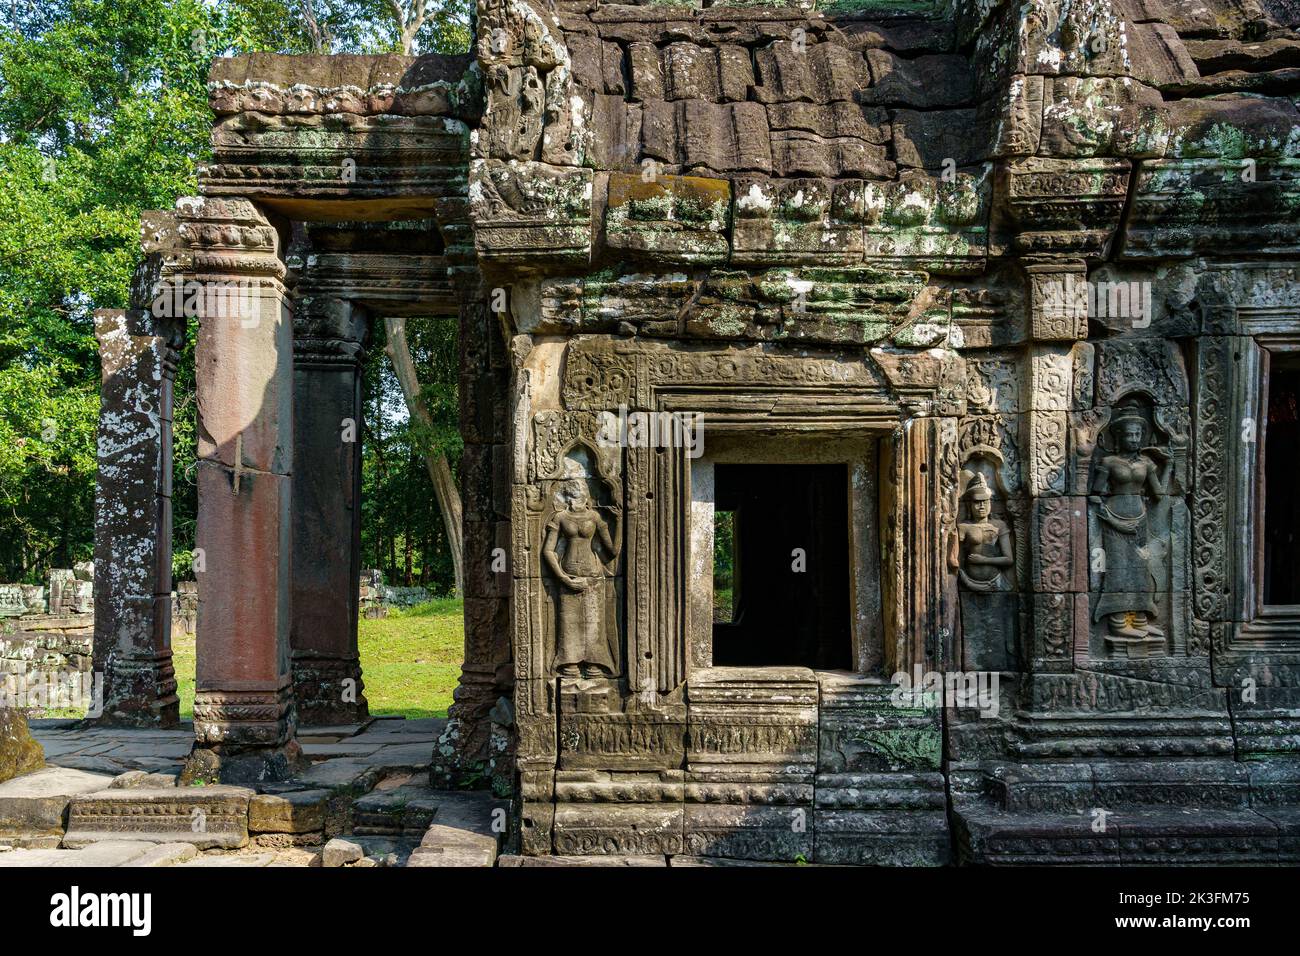 Camboya. Provincia de Siem Reap. El parque arqueológico de Angkor. Las antiguas ruinas del templo Banteay Kdei Foto de stock